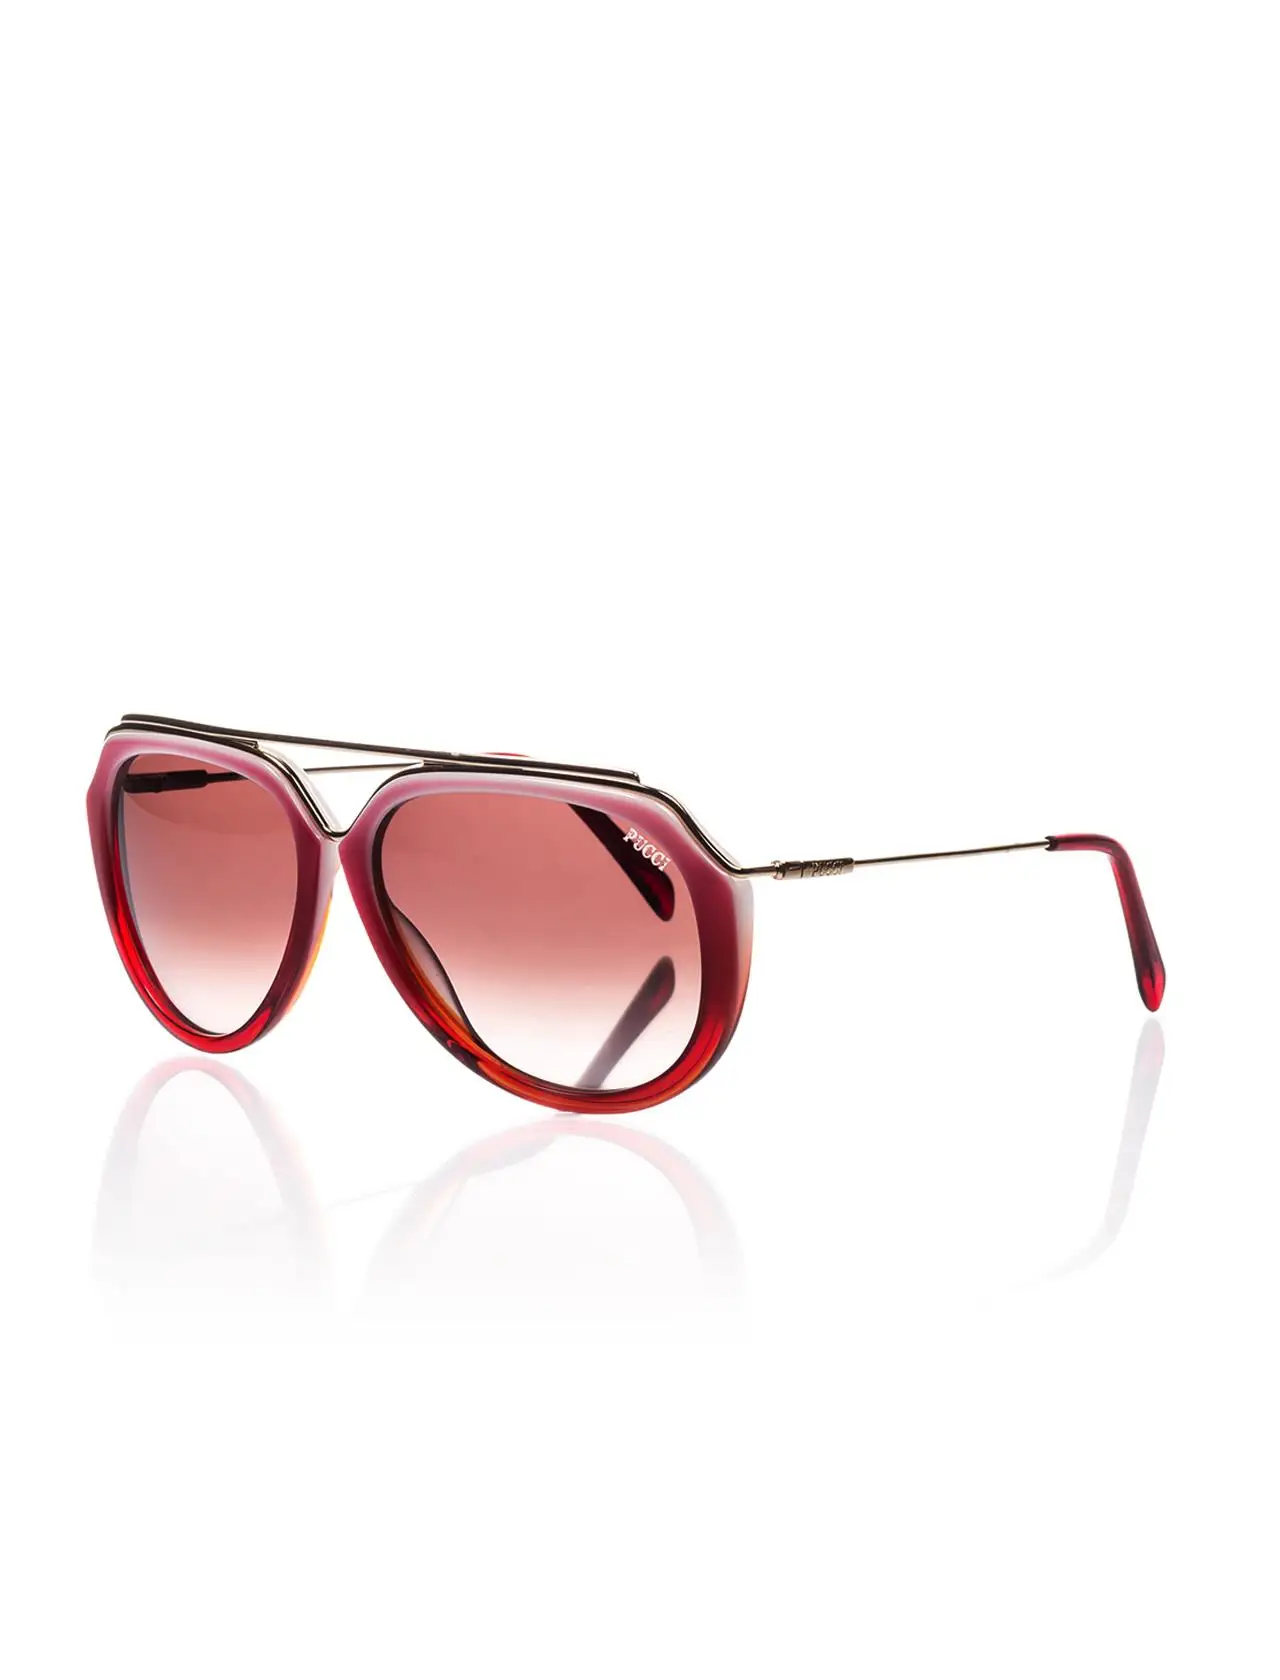 

Women's sunglasses ep 0015 74t 58 bone red organic drop pilot 58-13-135 emilio pucci